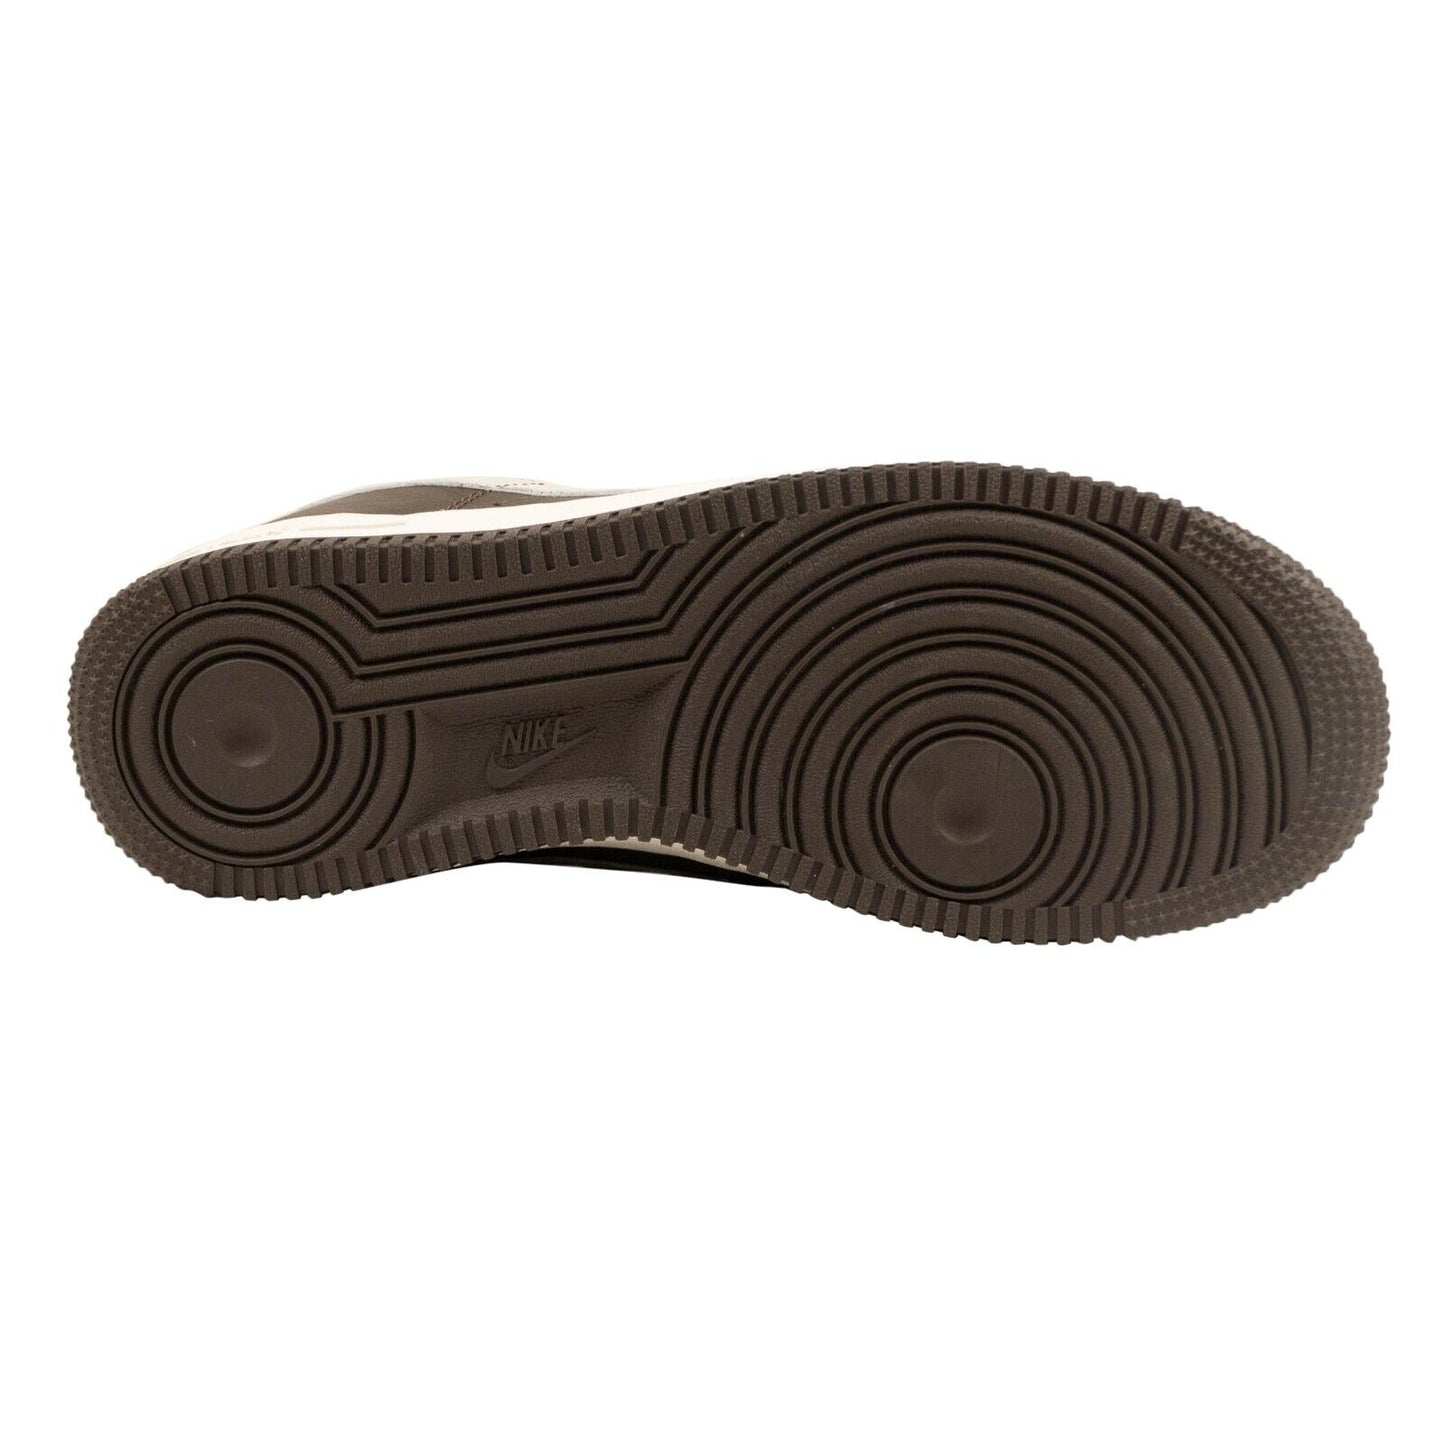 Nike Air Force 1 '07 Craft Sneakers - Dark Chocolate